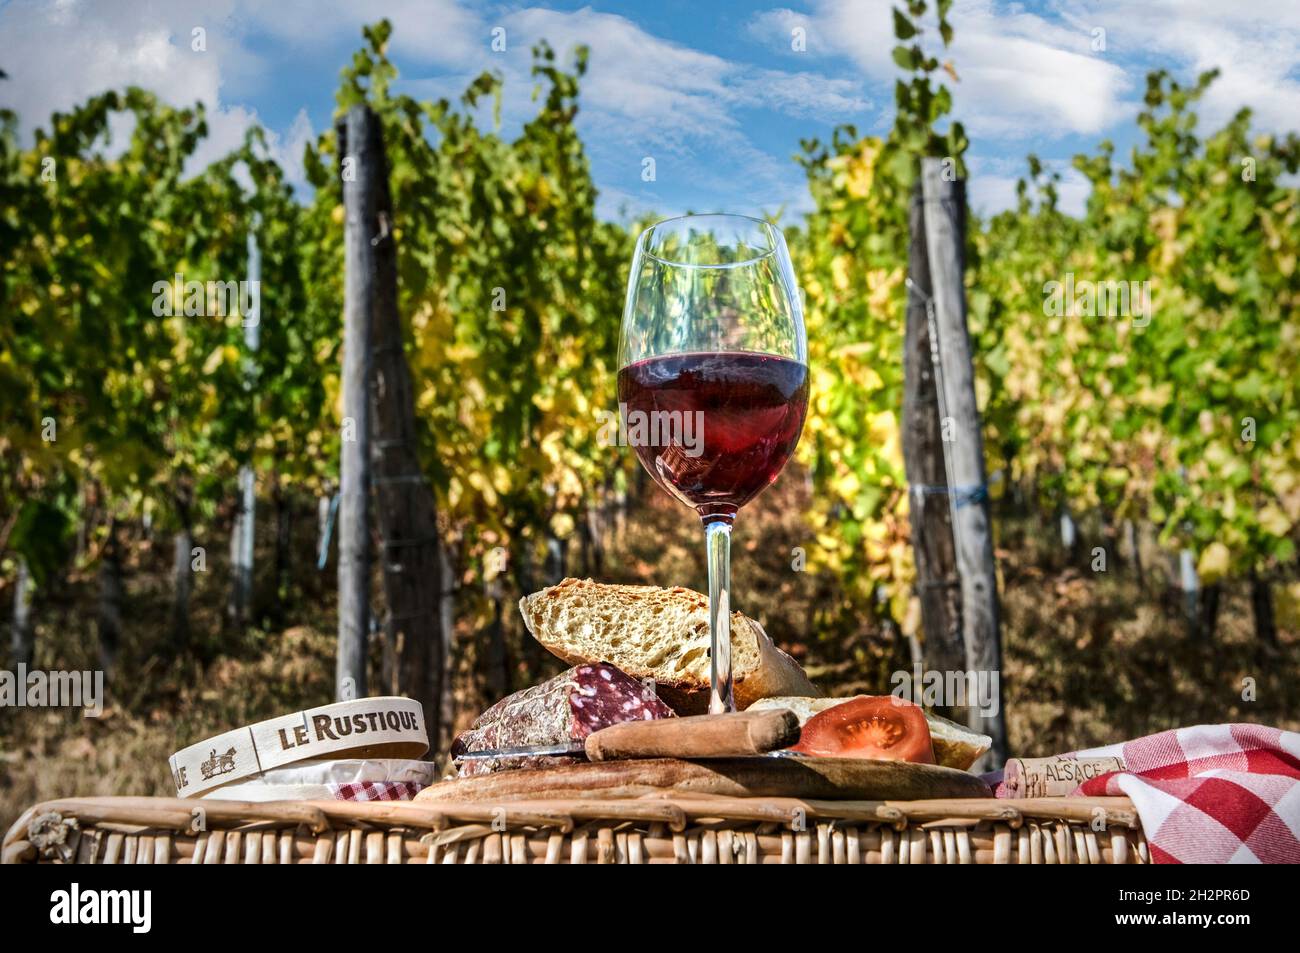 PICNIC VIGNETO FRANCIA ALL'APERTO pranzo picnic con vino rosso locale pane formaggio e saucisson in Francia vigneto francese Foto Stock